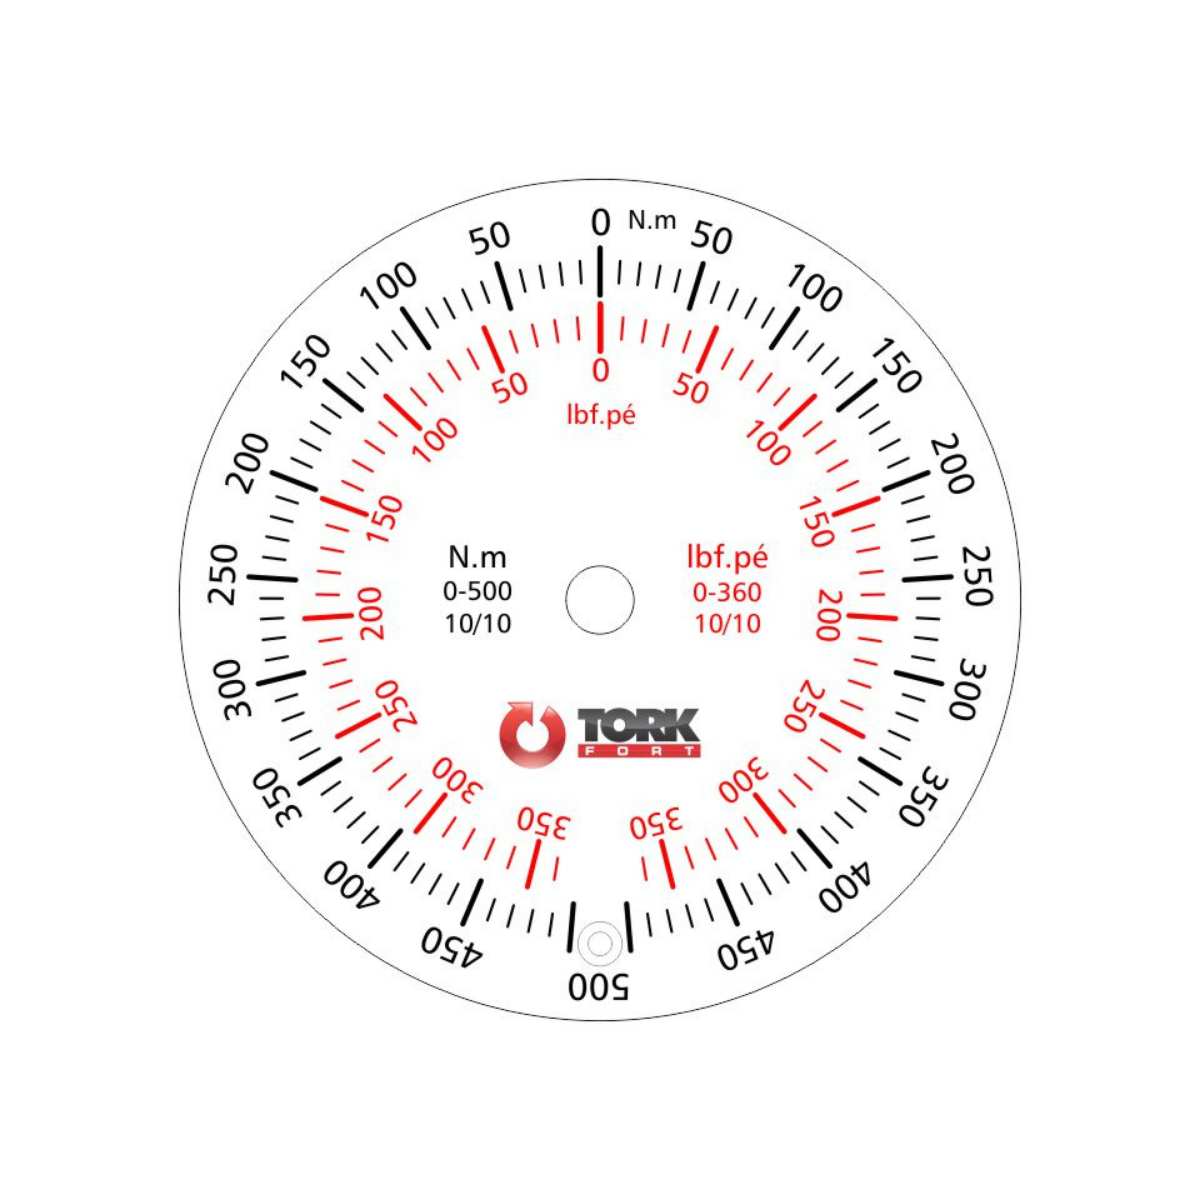 TRN500PA Torquímetro Relógio 0 a 500 N.m encaixe  3/4"com Laudo RBC